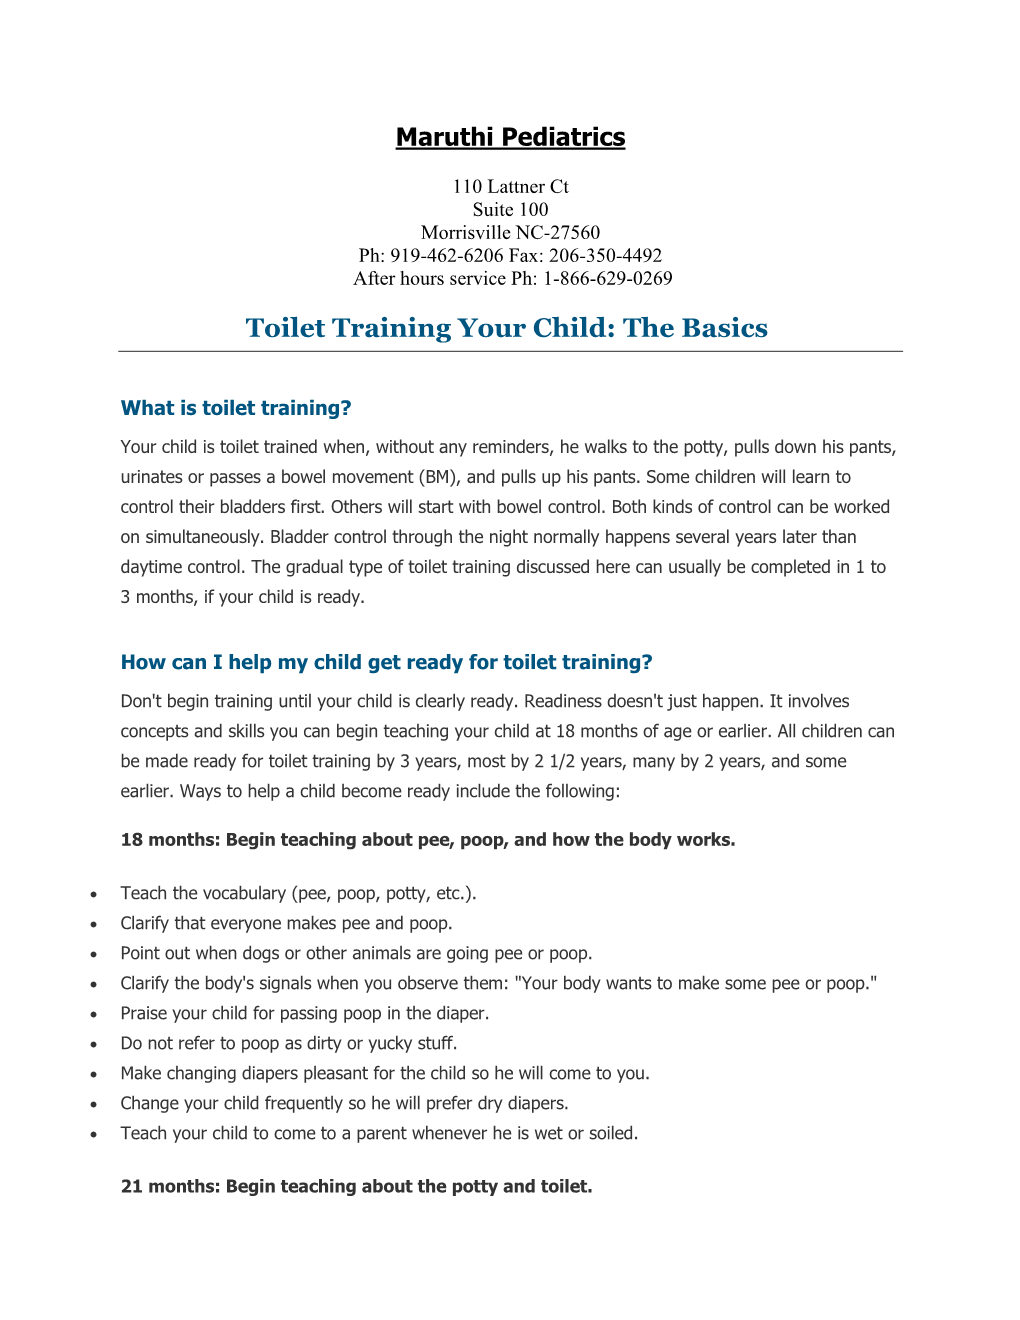 Toilet Training Your Child: the Basics